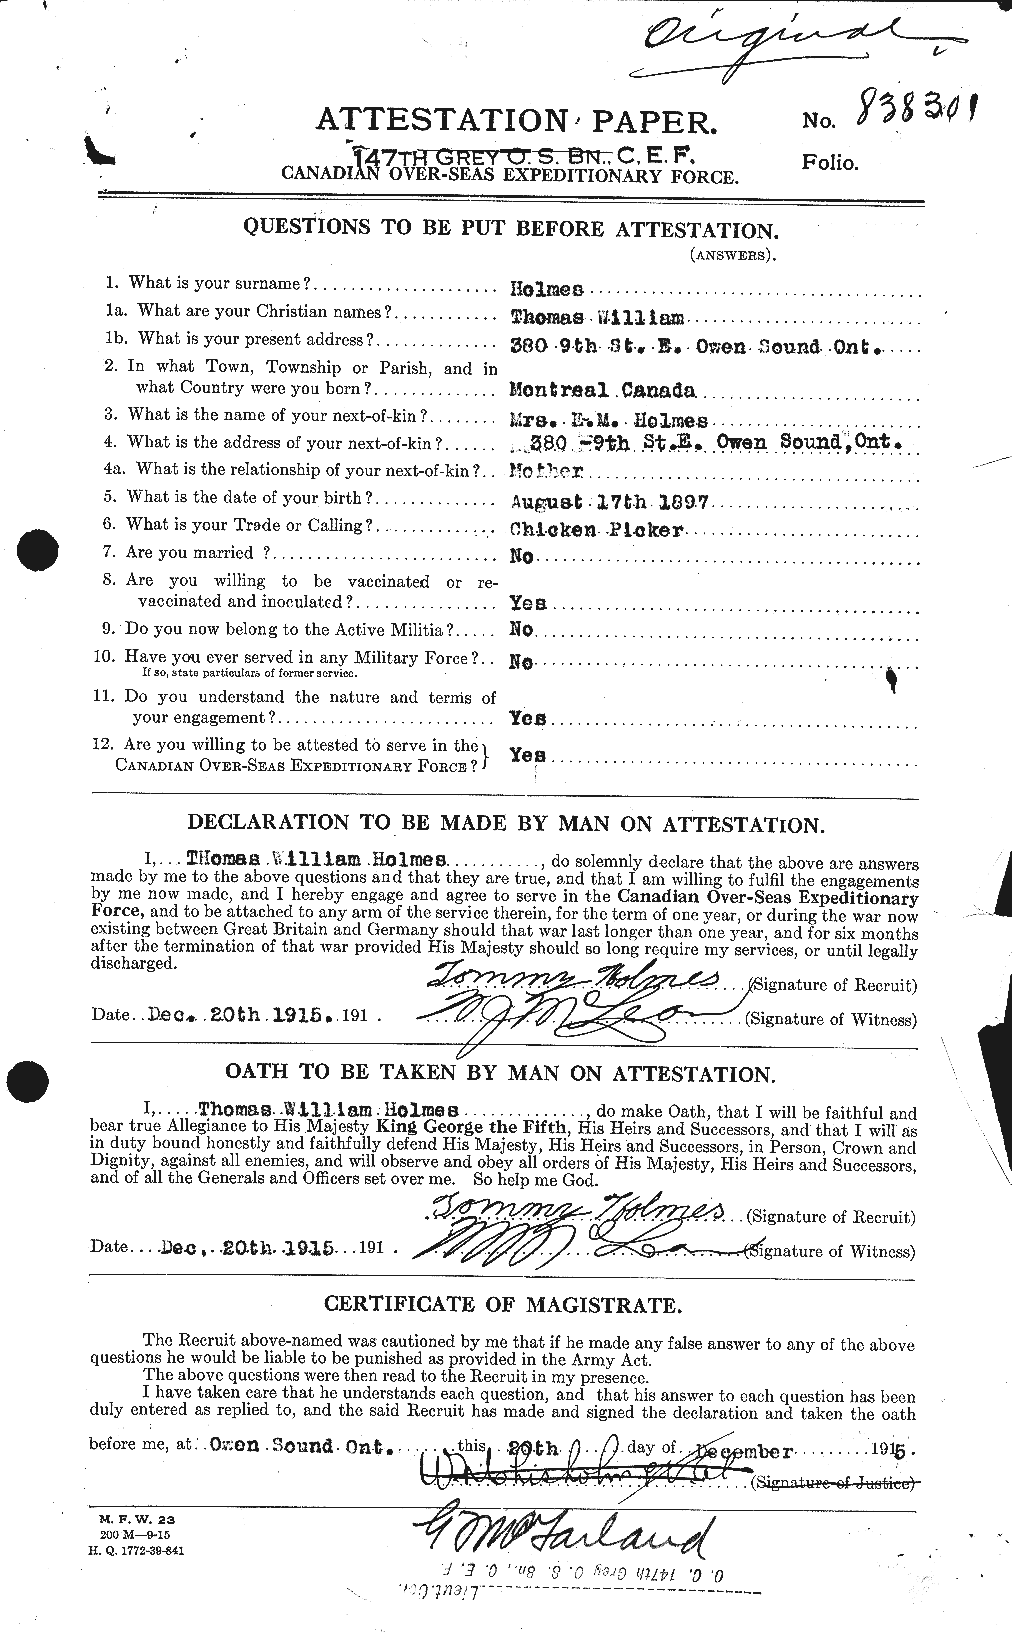 Dossiers du Personnel de la Première Guerre mondiale - CEC 395715a